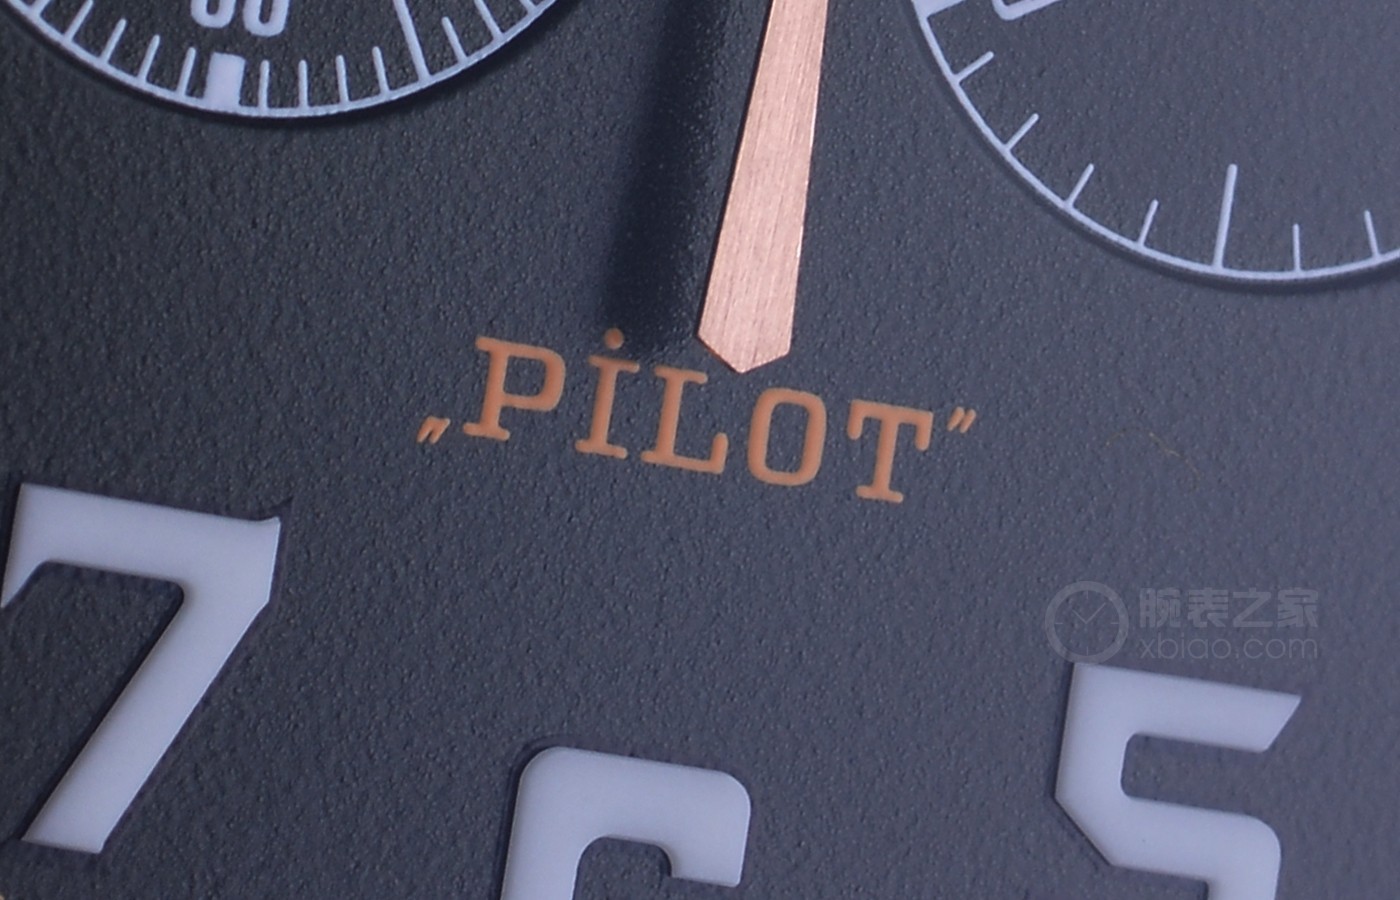 礼乐备]九天之上 决胜巅峰 品评真力时PILOT飞行员系列产品 TYPE 20 ADVENTURE记时腕表